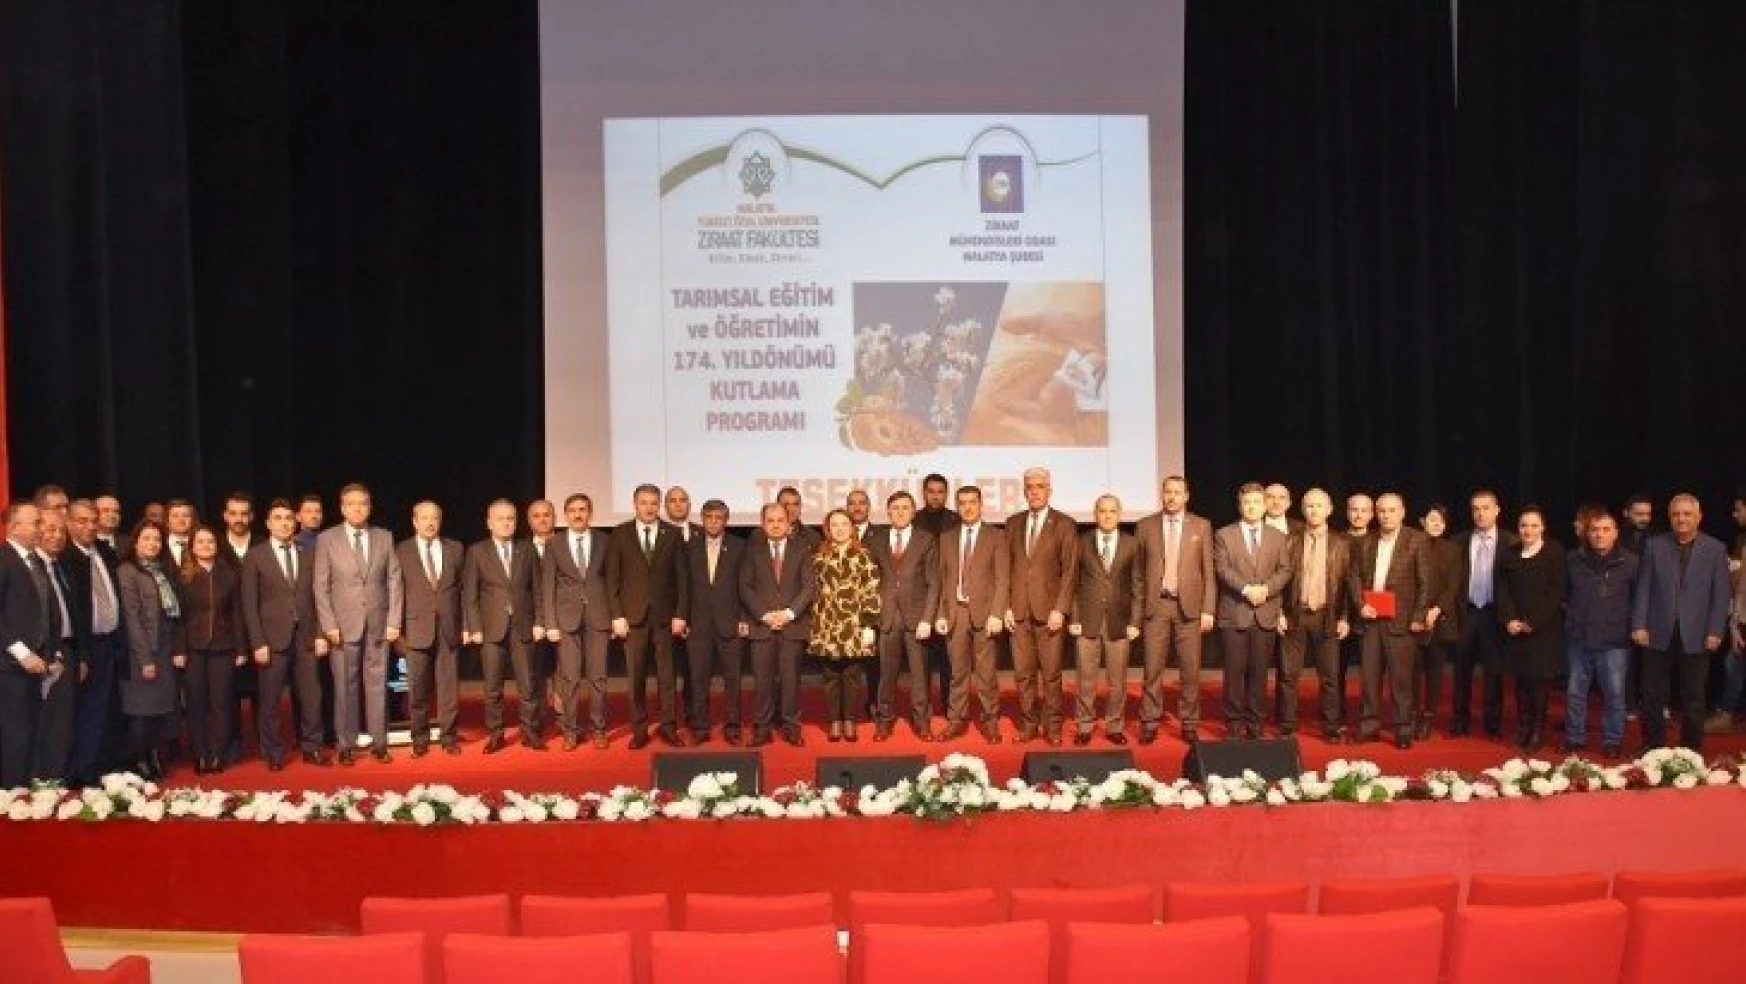 MTÜ'de Tarımsal Eğitim ve Öğretimin 174. Yıldönümü Töreni Yapıldı